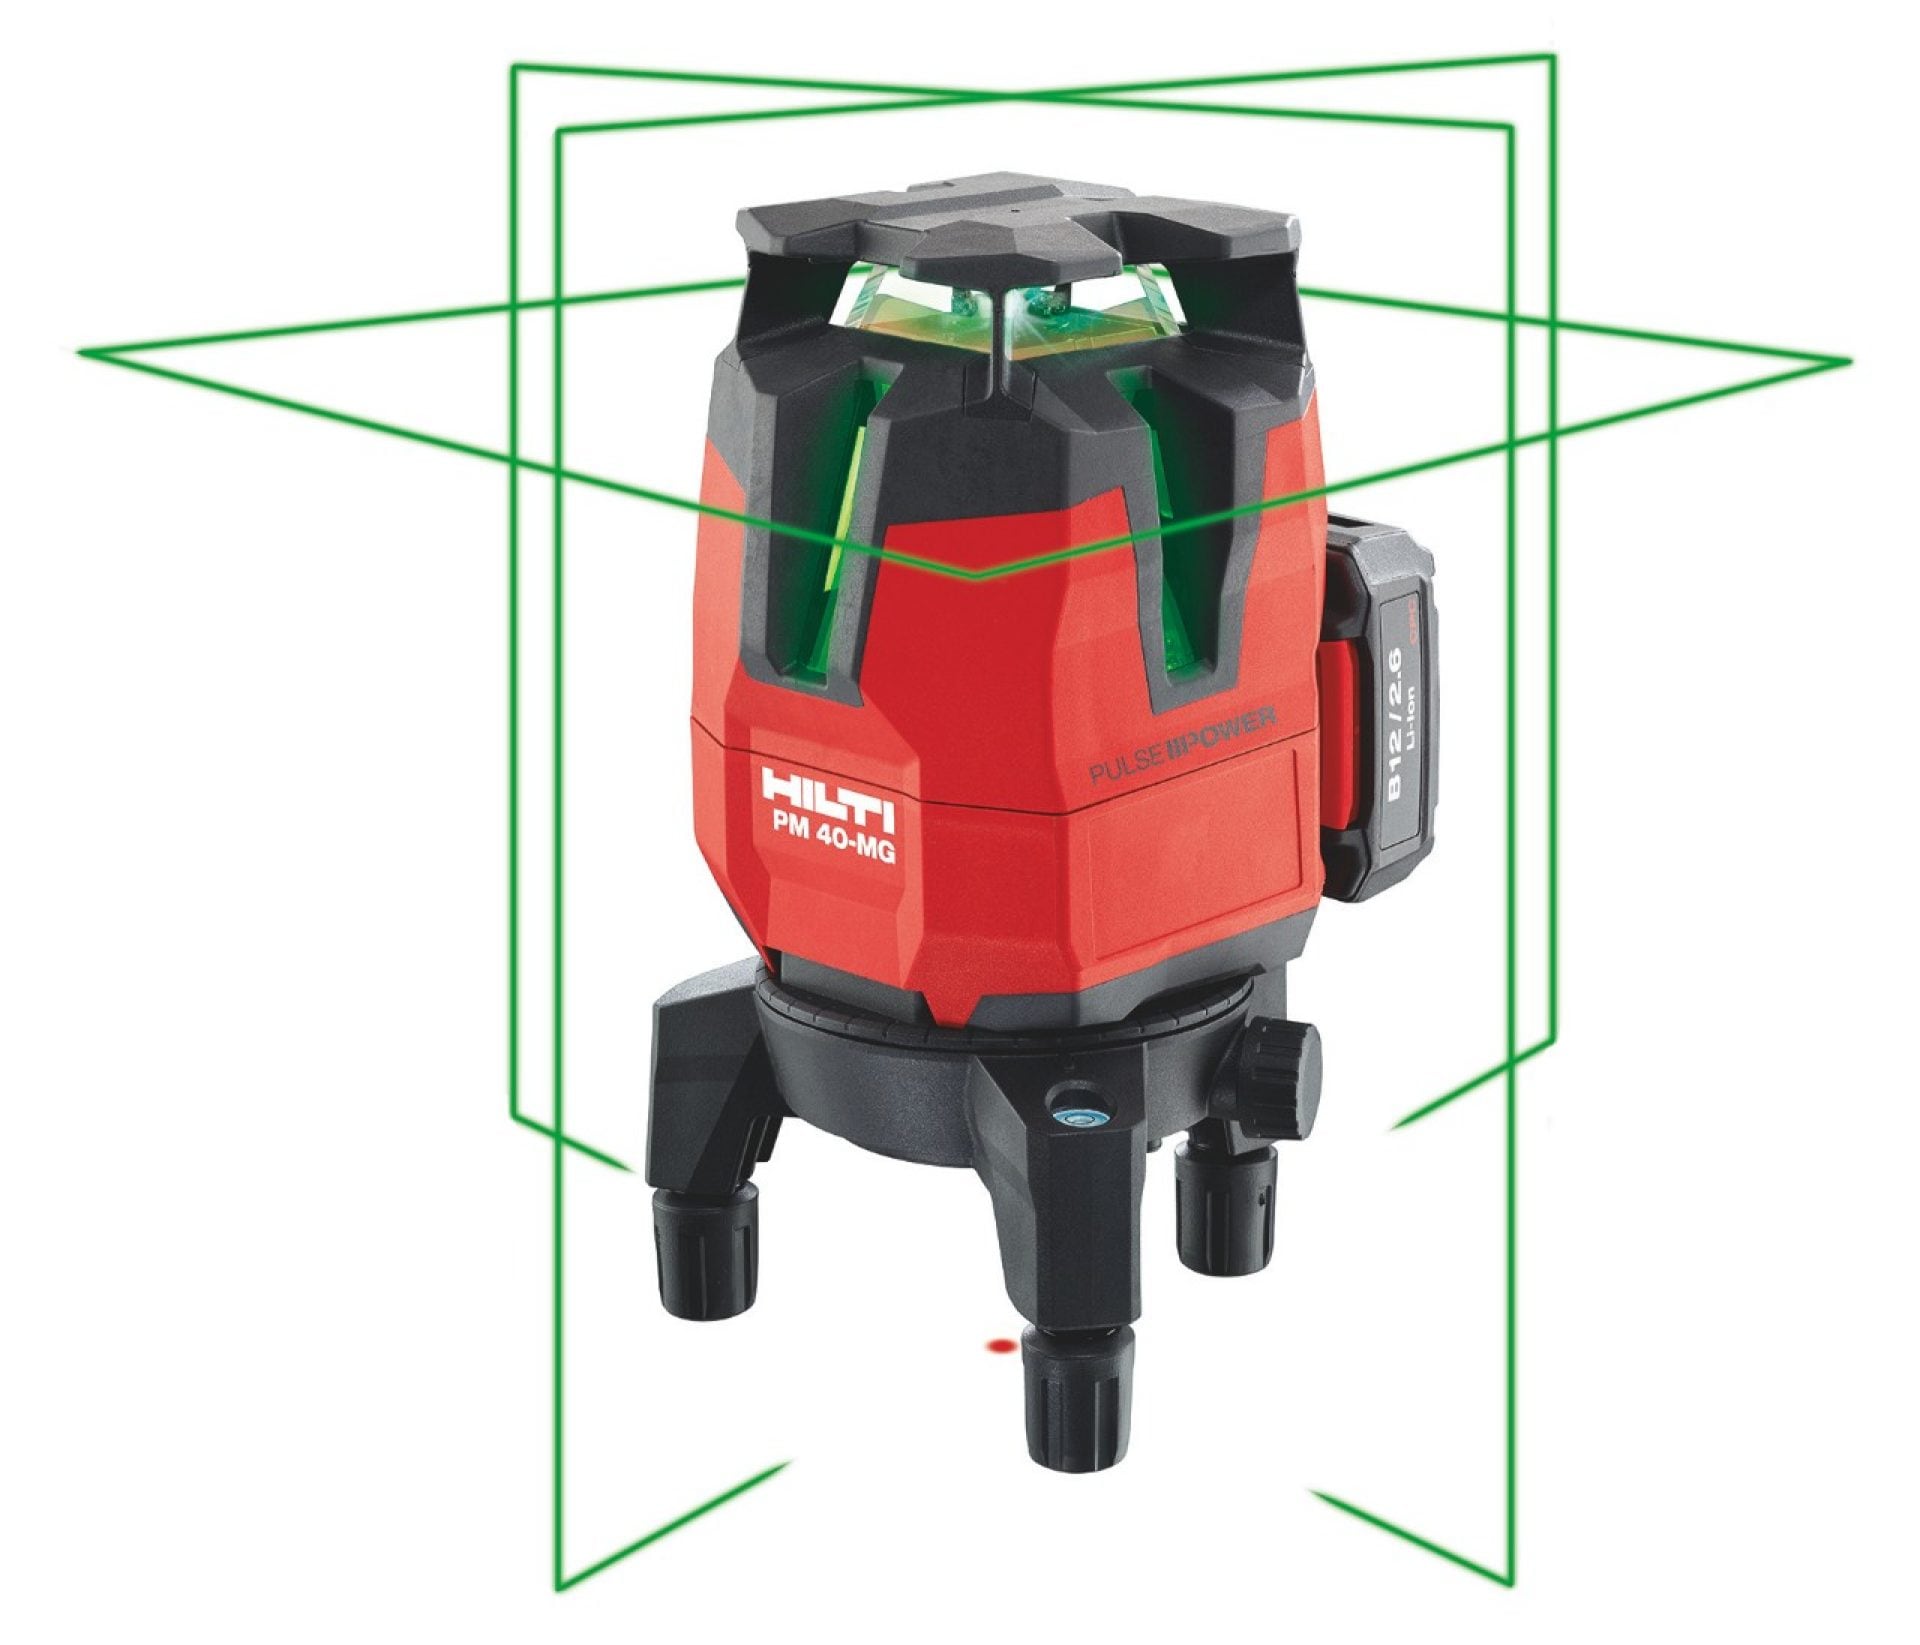 Laser multilinea con raggio laser verde Hilti PM 40-MG con quattro linee verticali e una linea a 360°